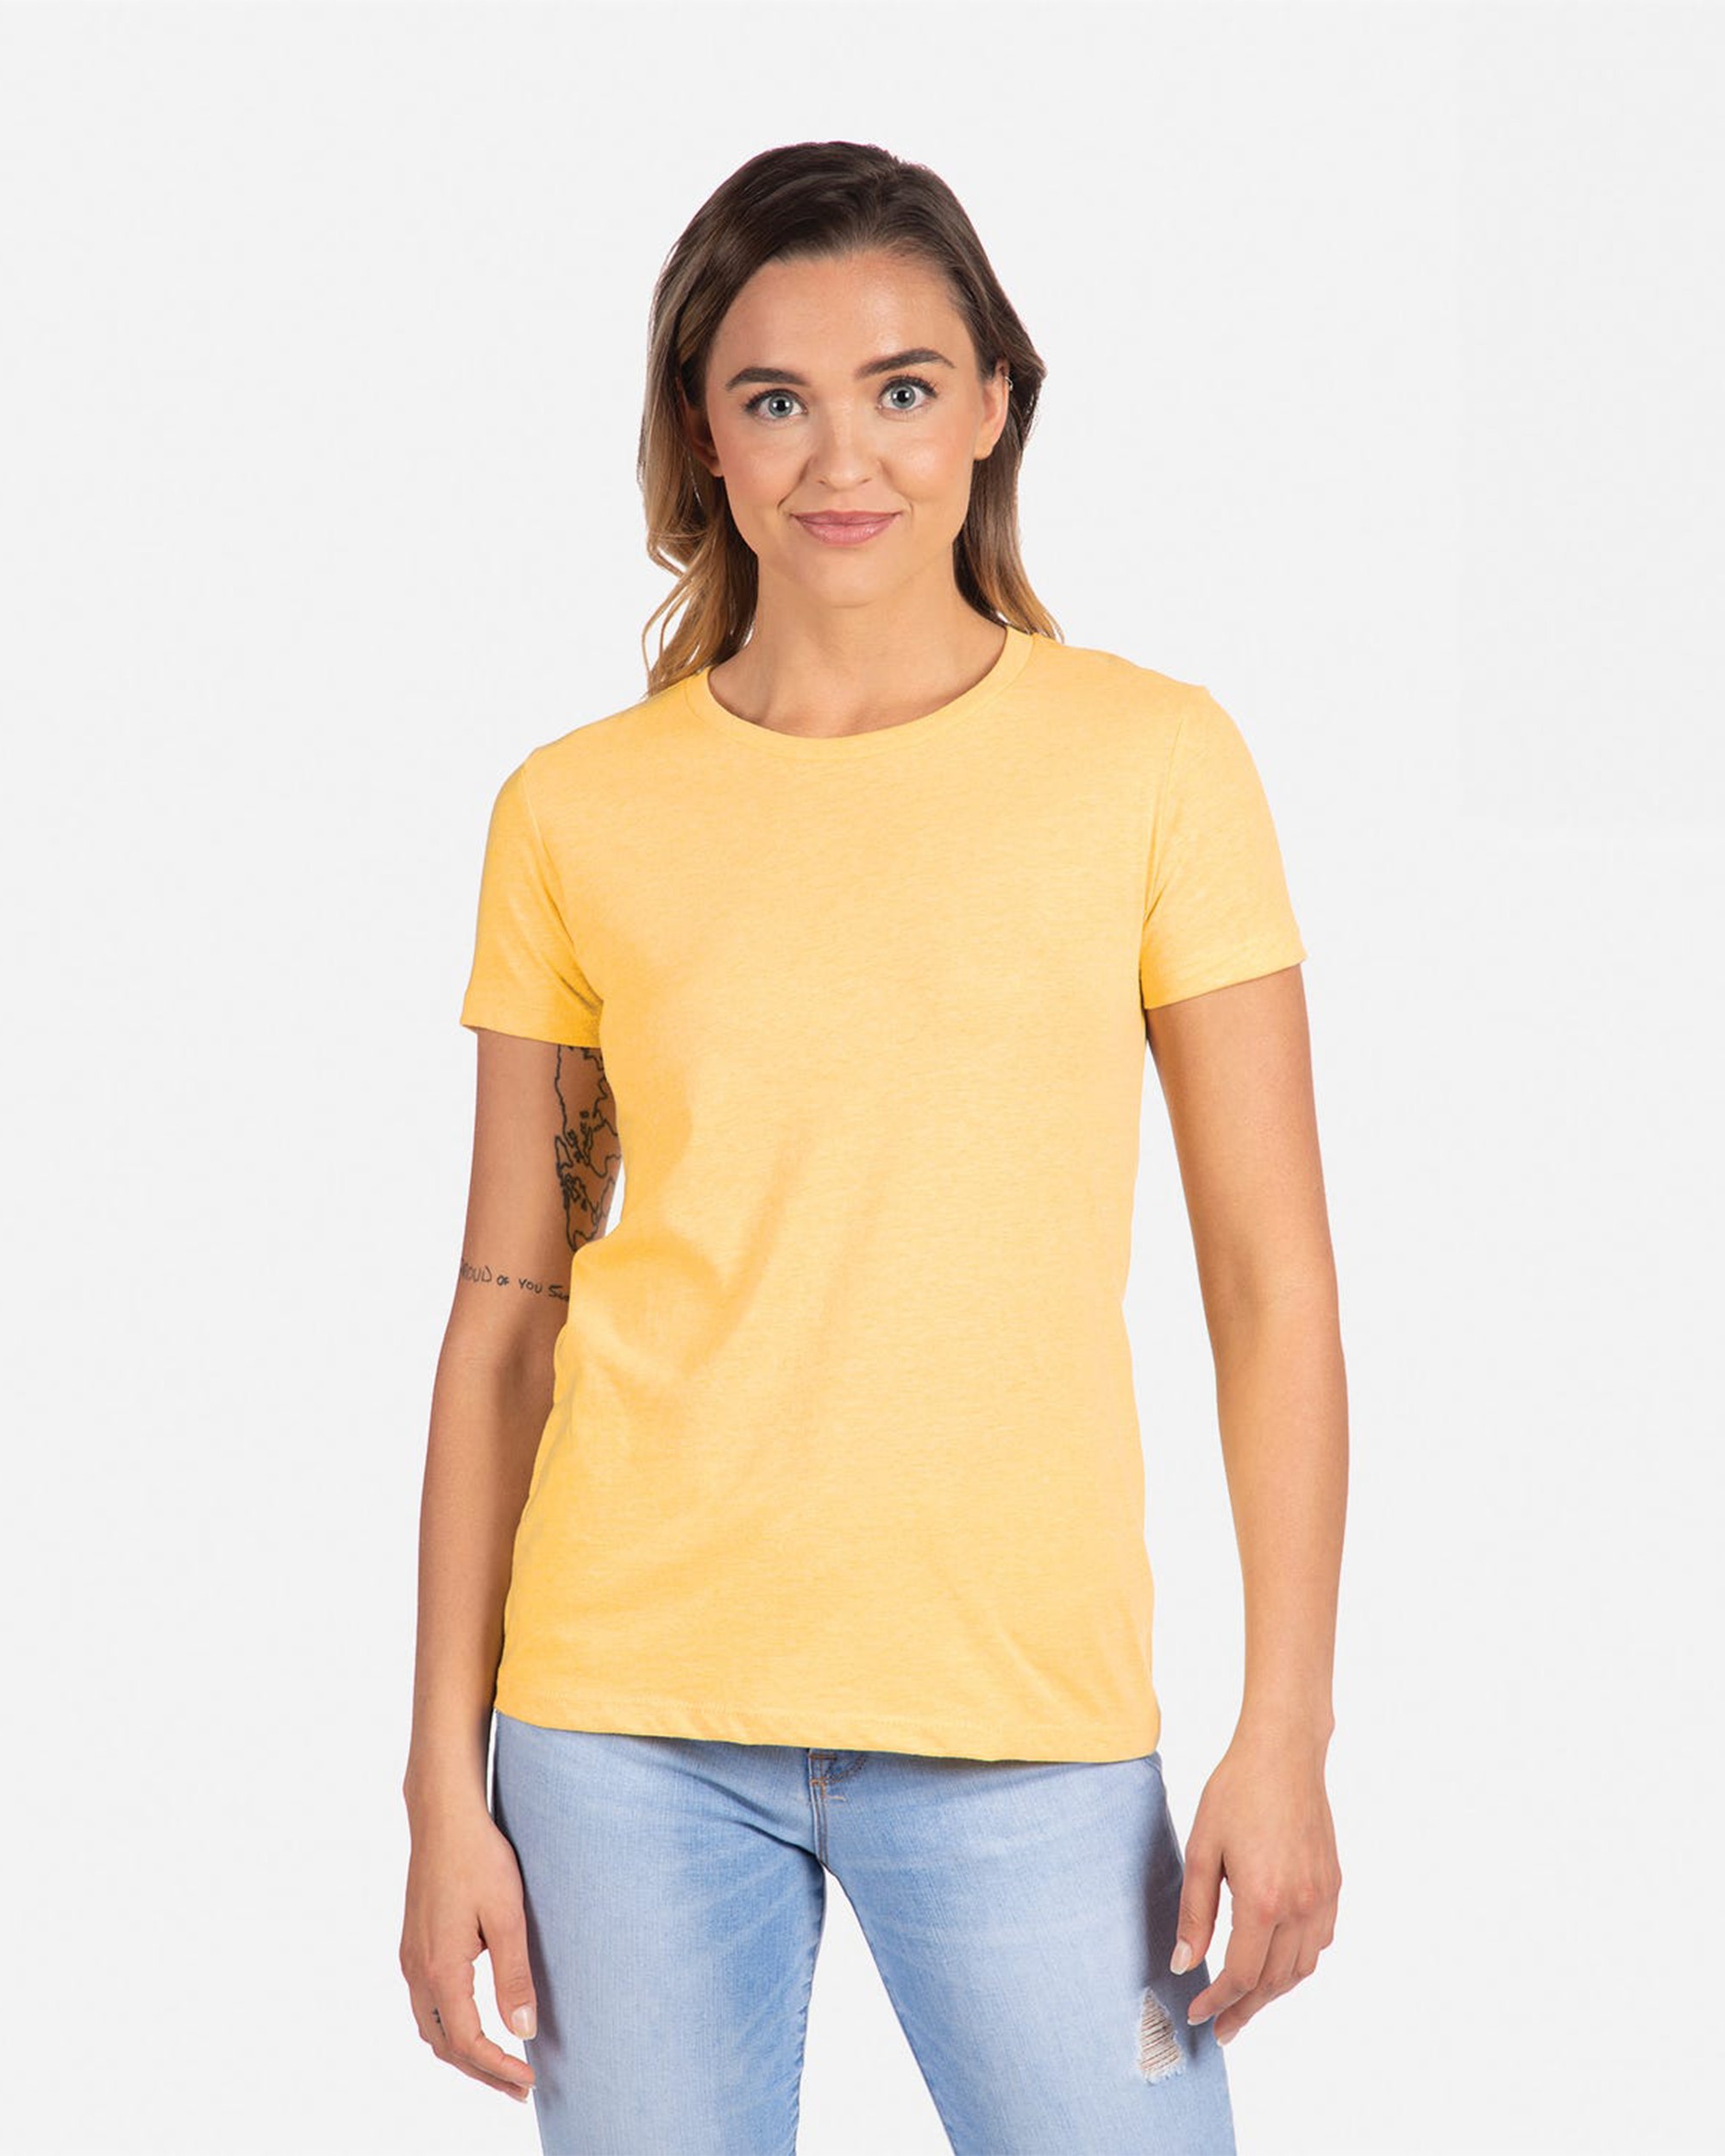 Next Level Apparel® 6610 Women's CVC T-Shirt